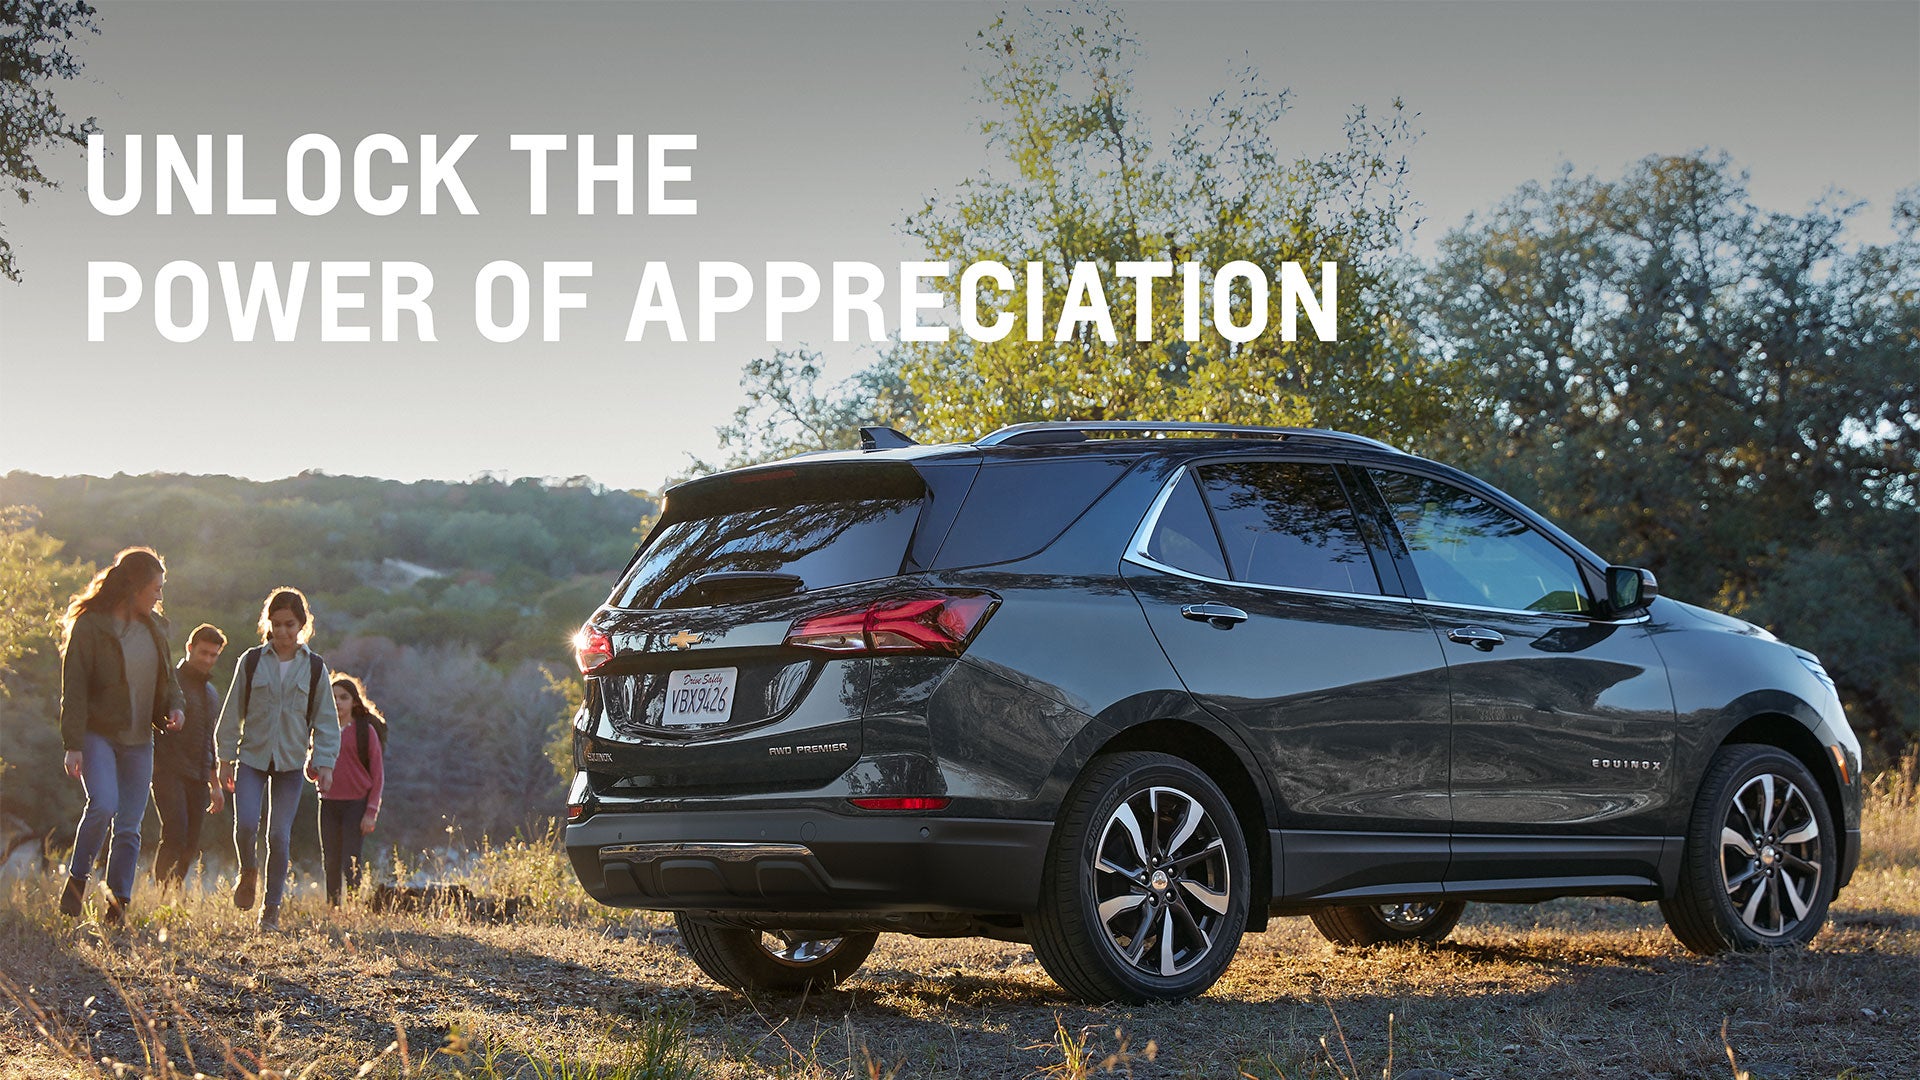 Unlock the power of appreciation | SVG Chevrolet GMC Urbana in Urbana OH